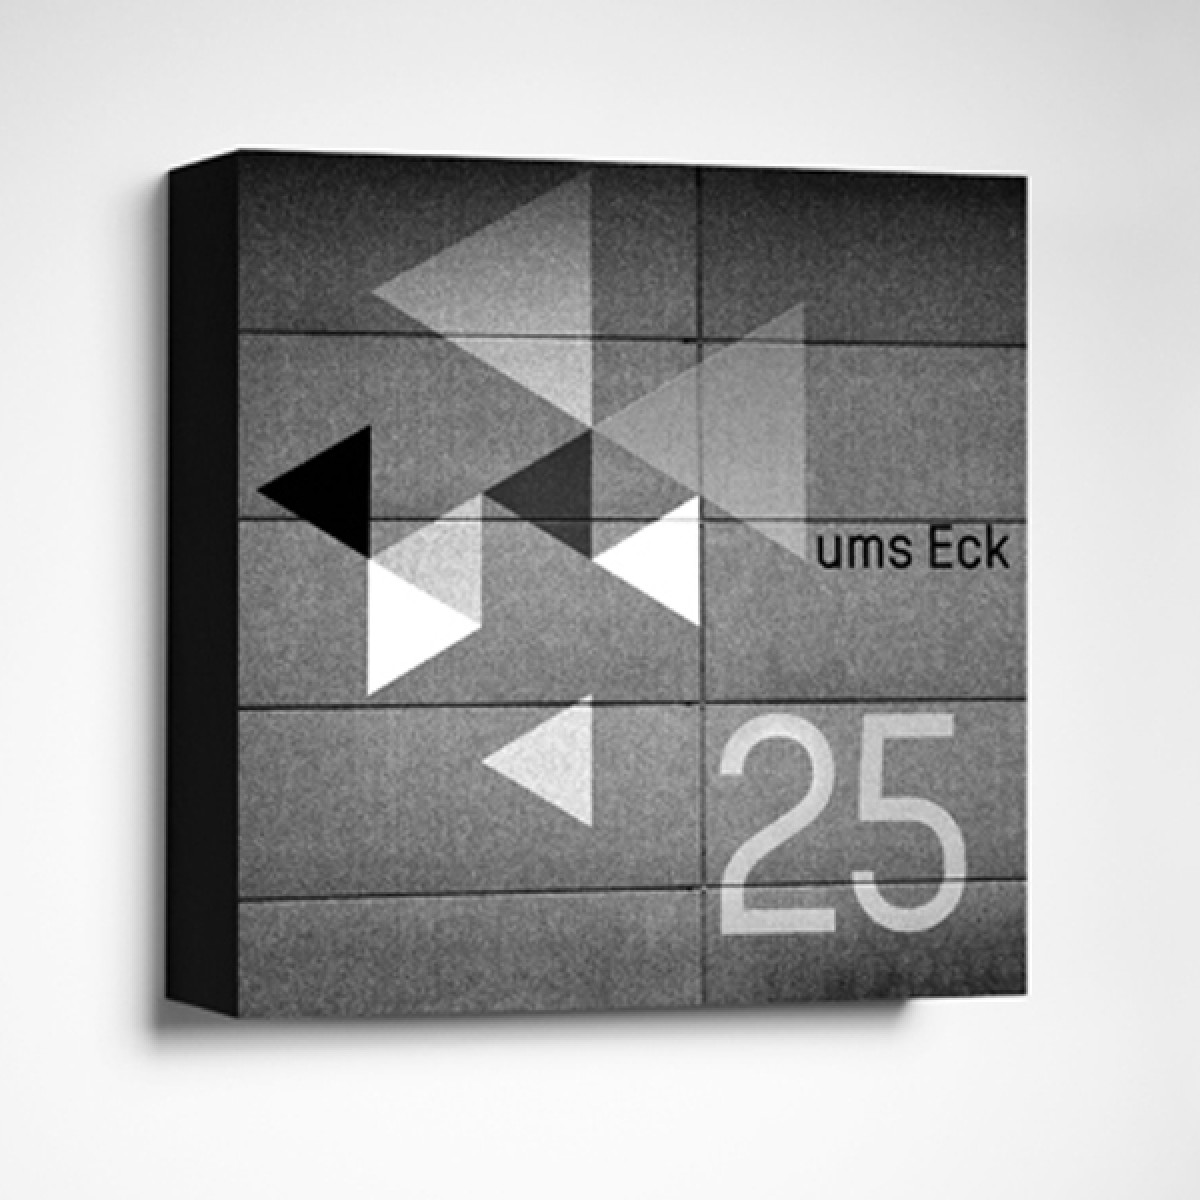 FrankfurterBubb UMS ECKLimited Edition schwarz-weißFoto-Kachel